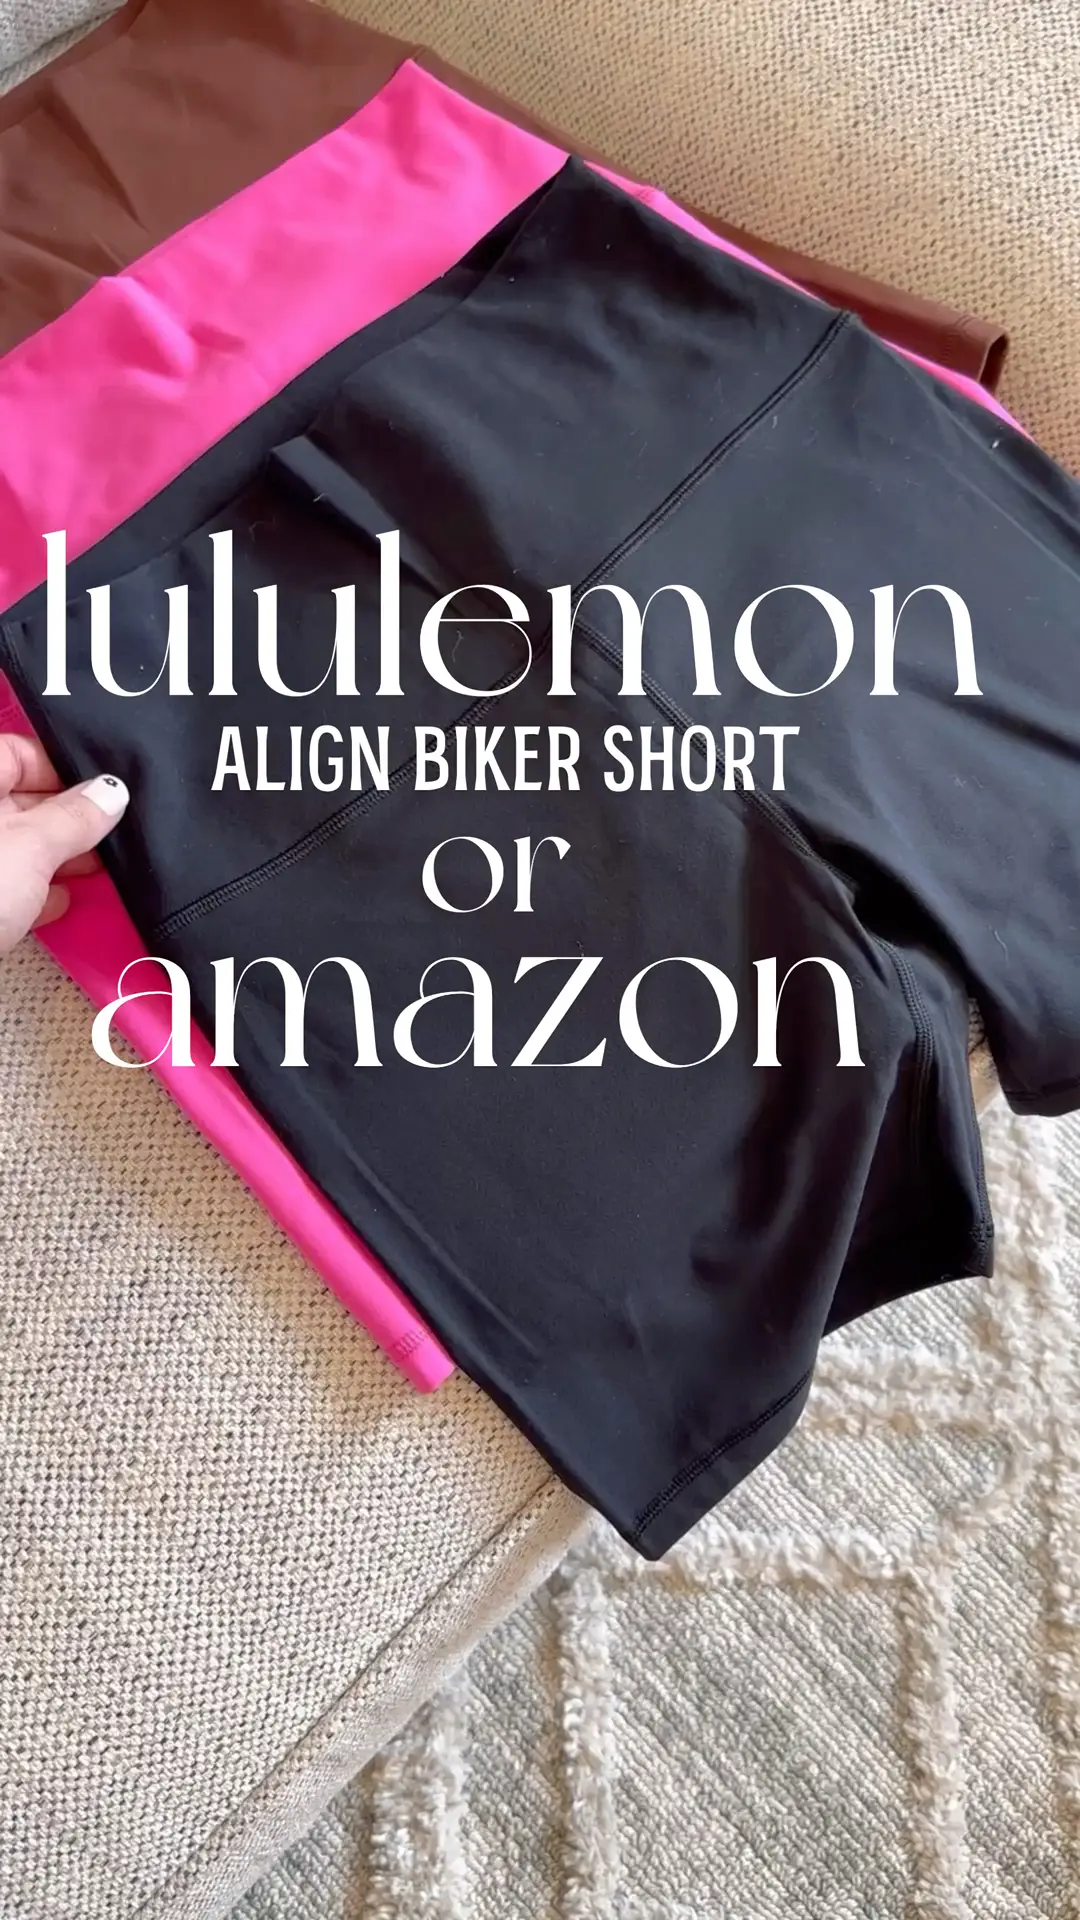 Lululemon lookalike biker shorts from